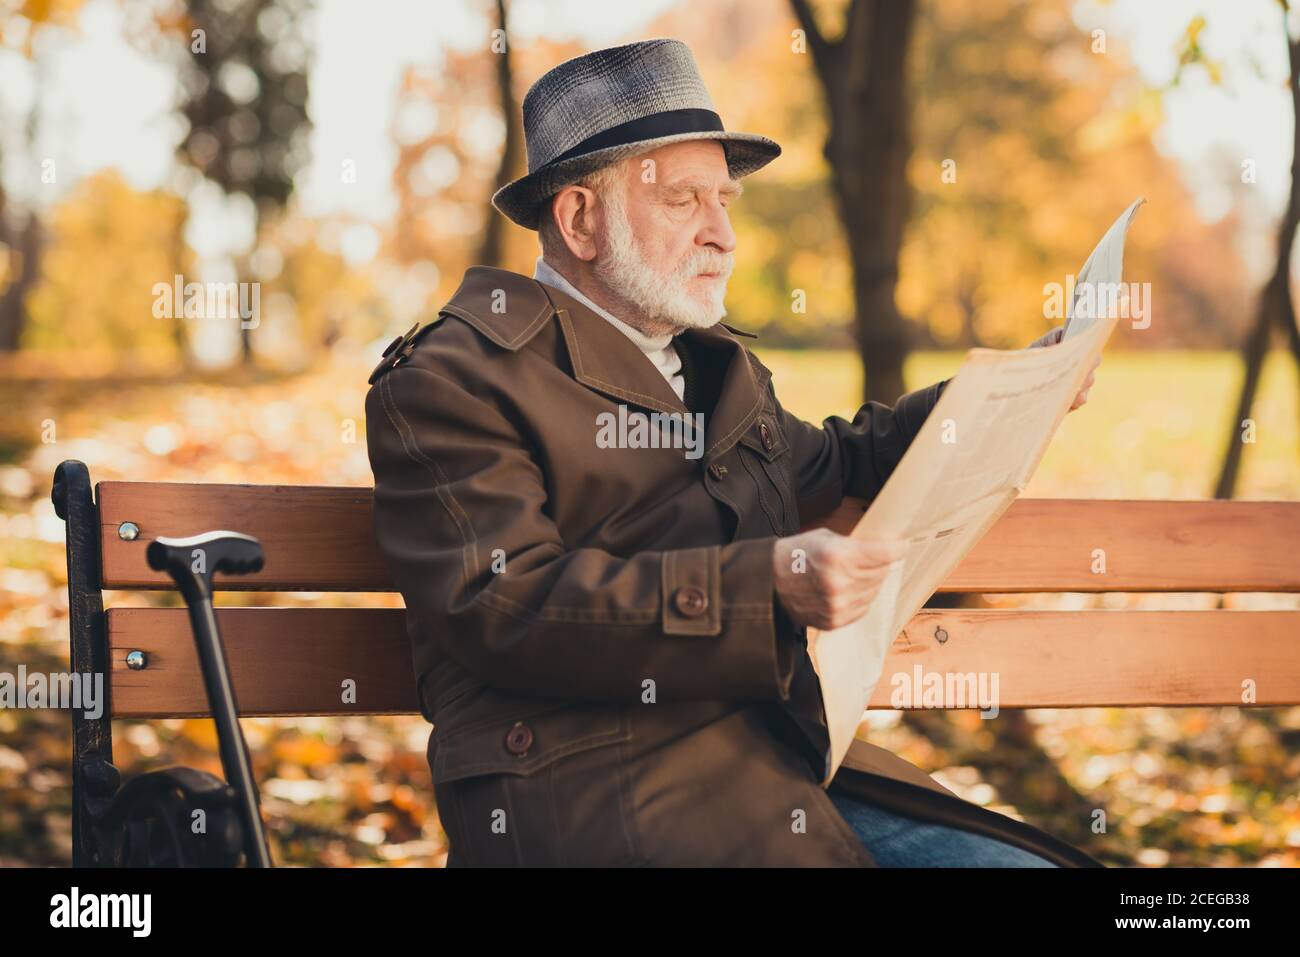 Profil Seitenfoto von seriösen alten Mann englischen Gentleman haben park morgens Freizeit Herbstspaziergang Sitzbank Zeitung lesen Lange Mütze tragen Stockfoto